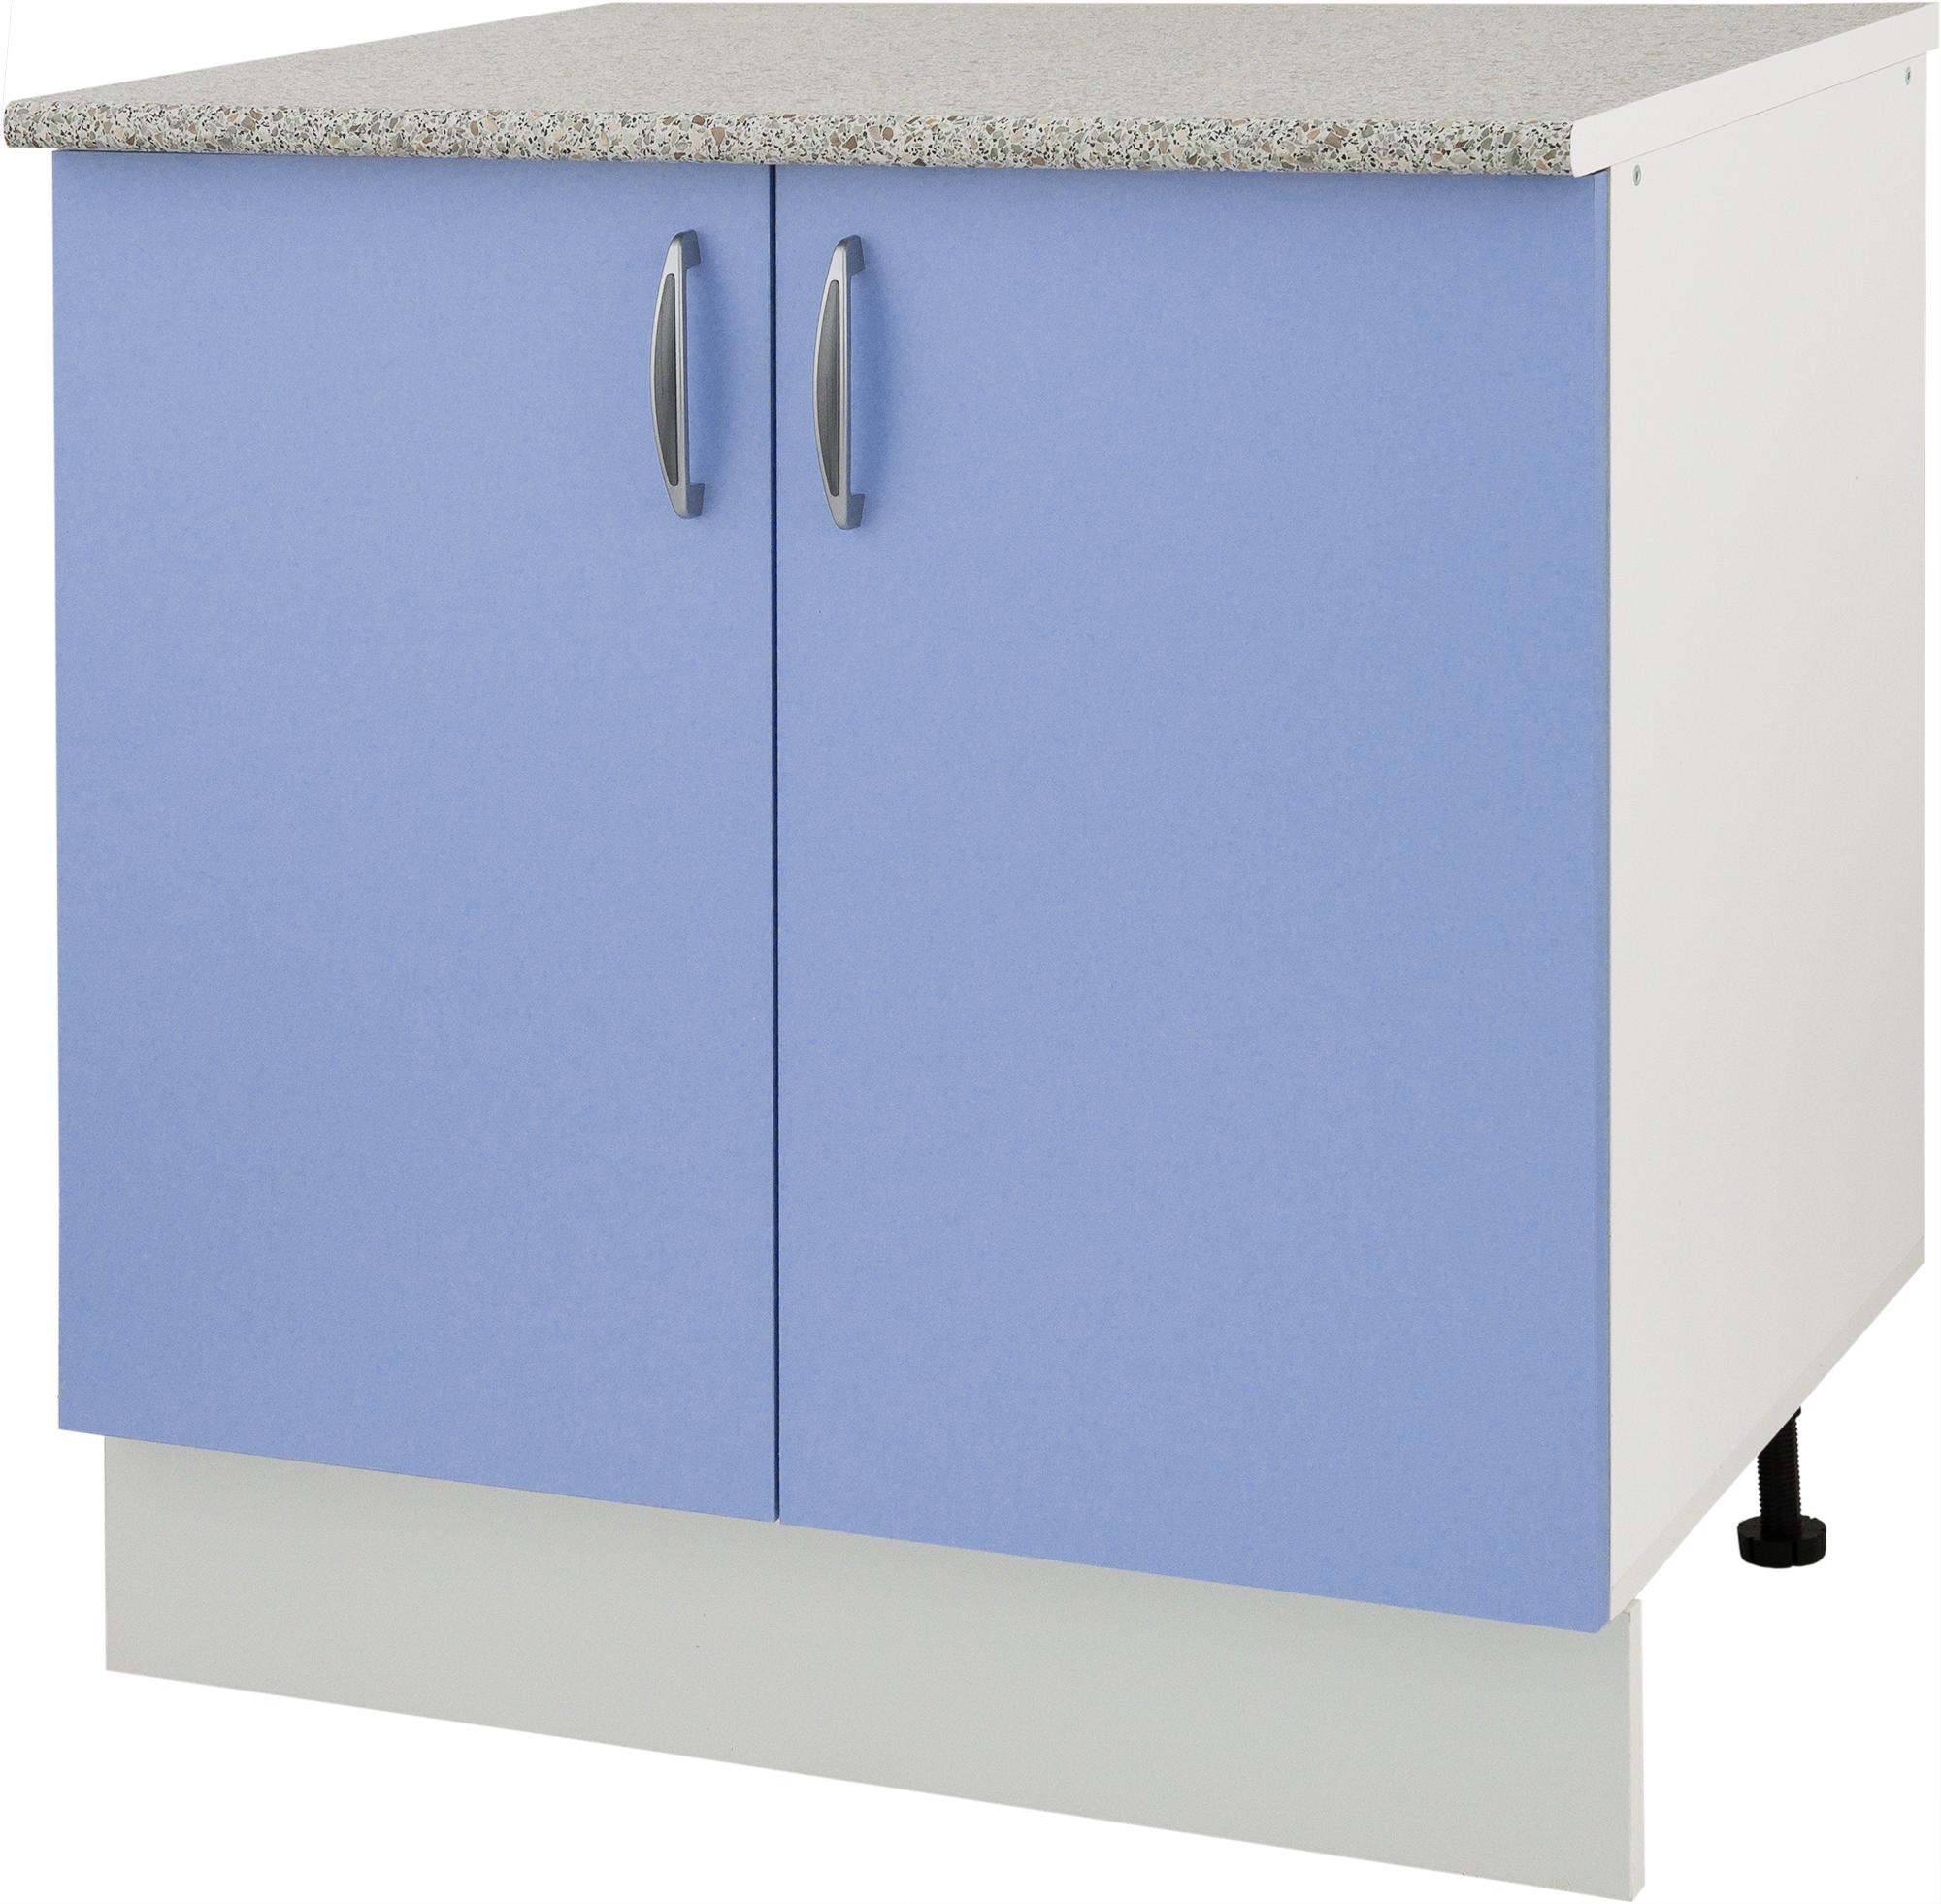 Купить кухонные шкафы бу. Шкаф напольный Лагуна СП 85х80 см цвет голубой. Шкаф кухонный напольный 80 см Леруа Мерлен. Шкаф напольный «Лагуна д». Кухня Лагуна Леруа Мерлен.